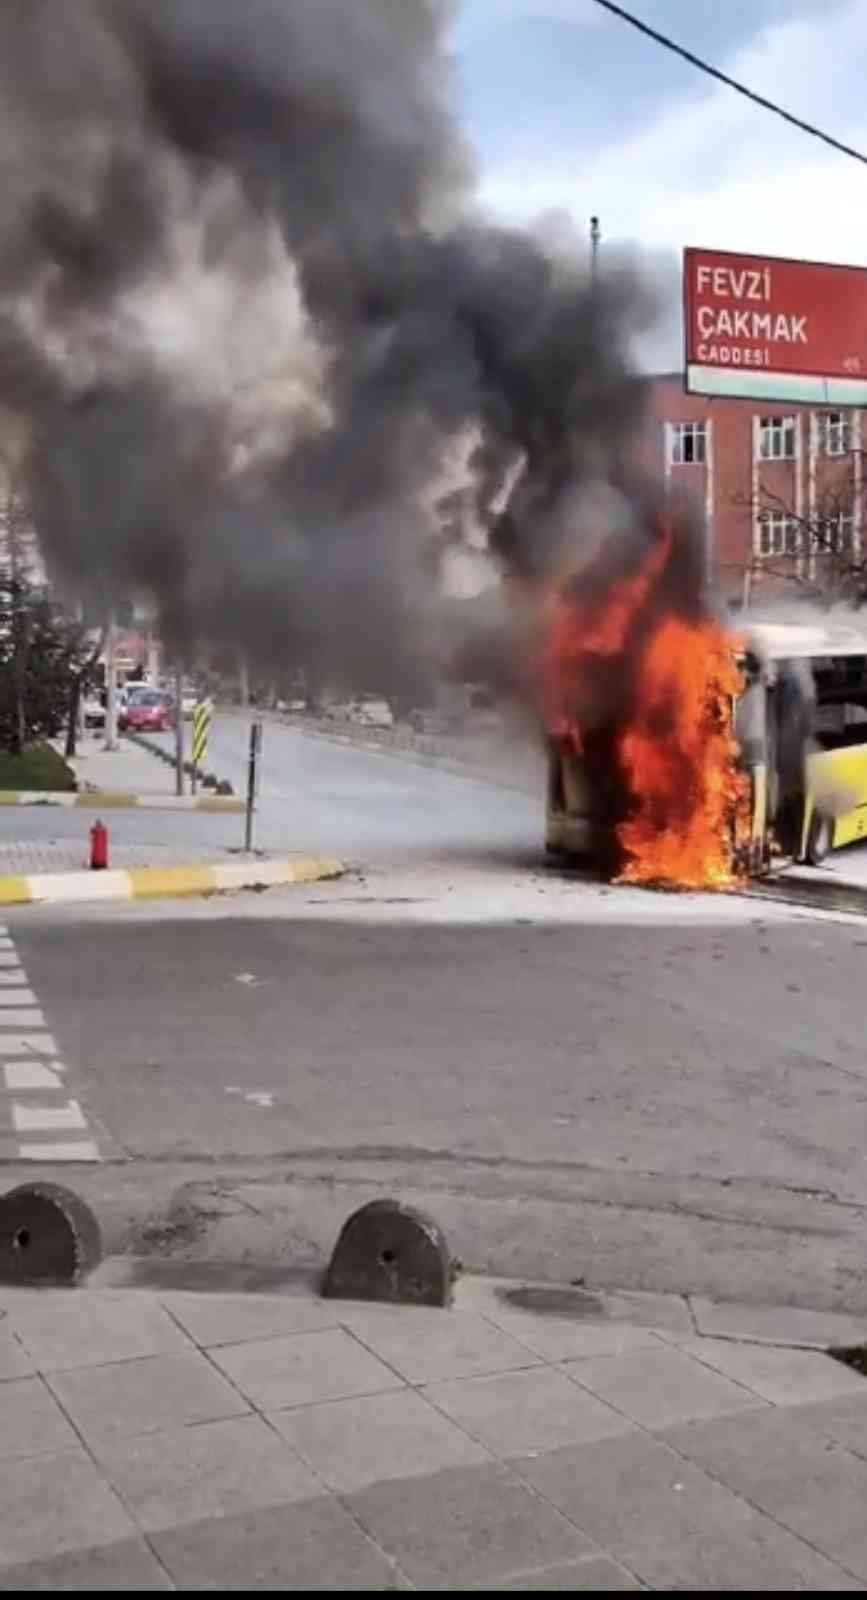 Bağcılar’da seyir halindeki İETT otobüsü motor kısmından tutuşarak alev alev yandı. İtfaiye ekiplerinin müdahalesiyle yangın söndürüldü. Yangın ...